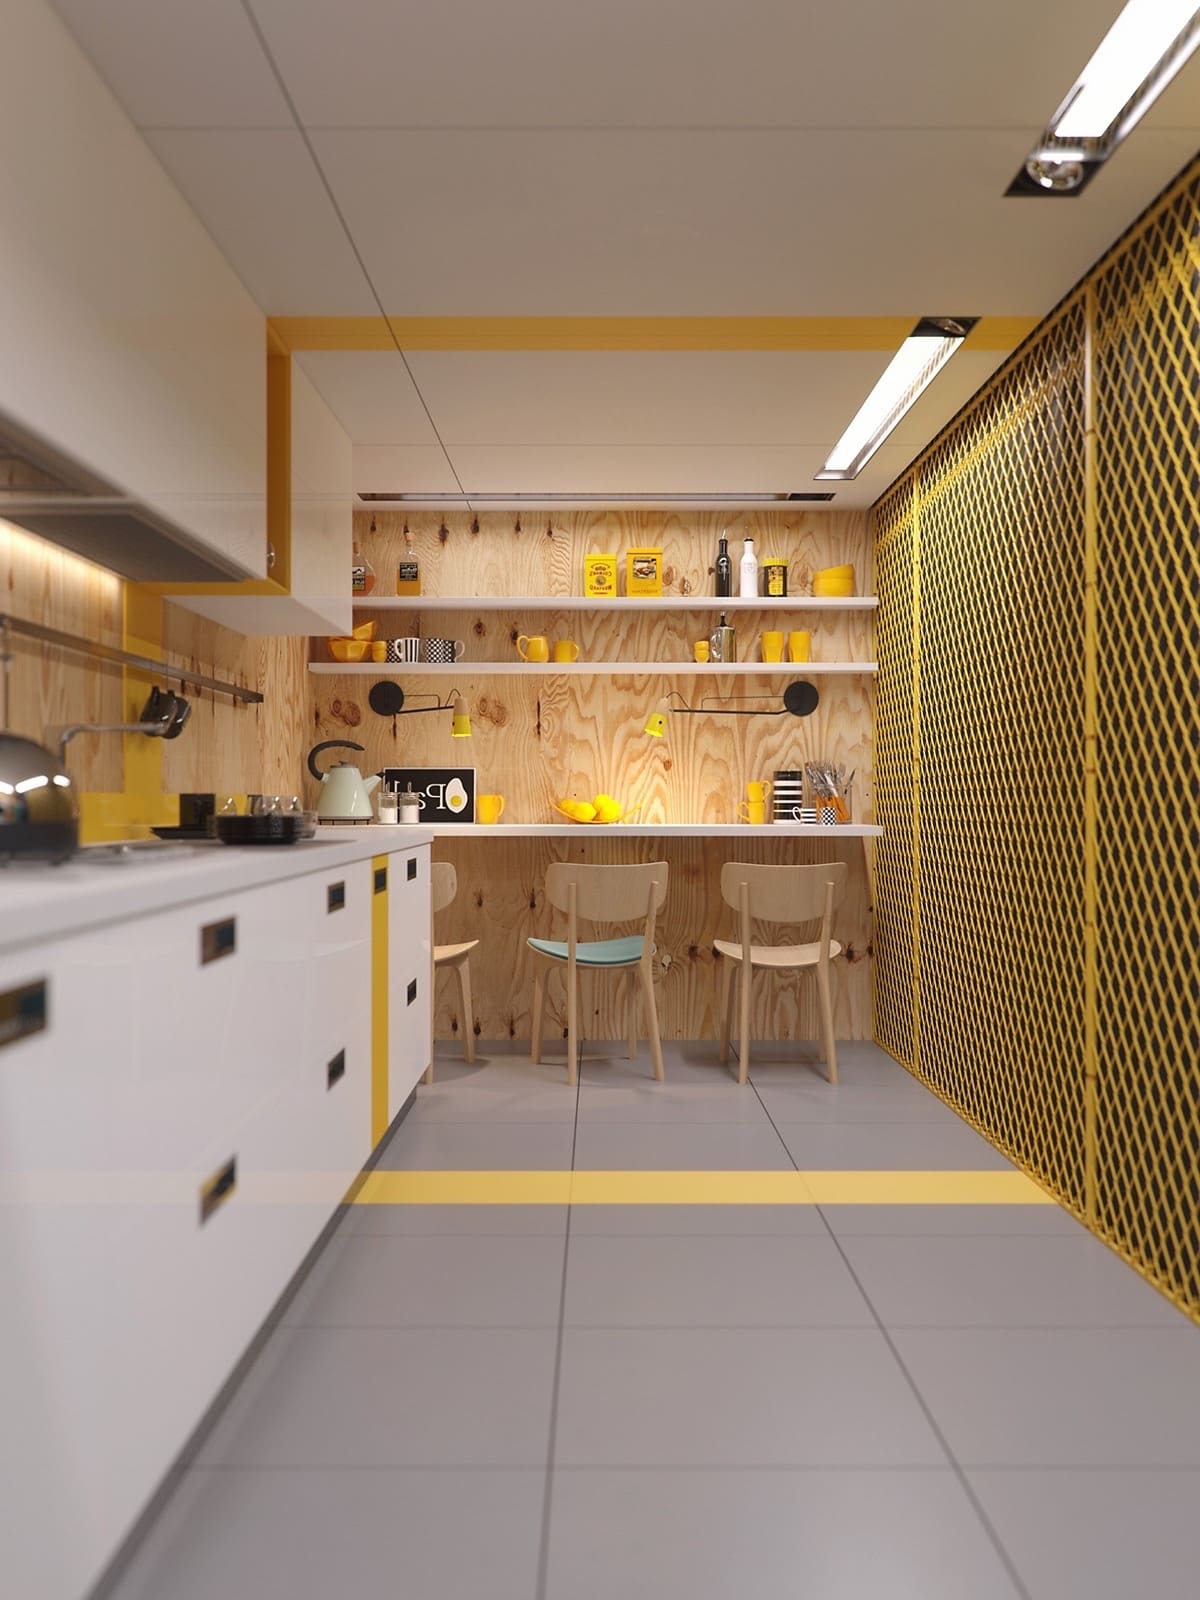 Красивый, можно сказать идеальный дизайн узкой кухни с хорошо организованным освещением всех ее функциональных зон